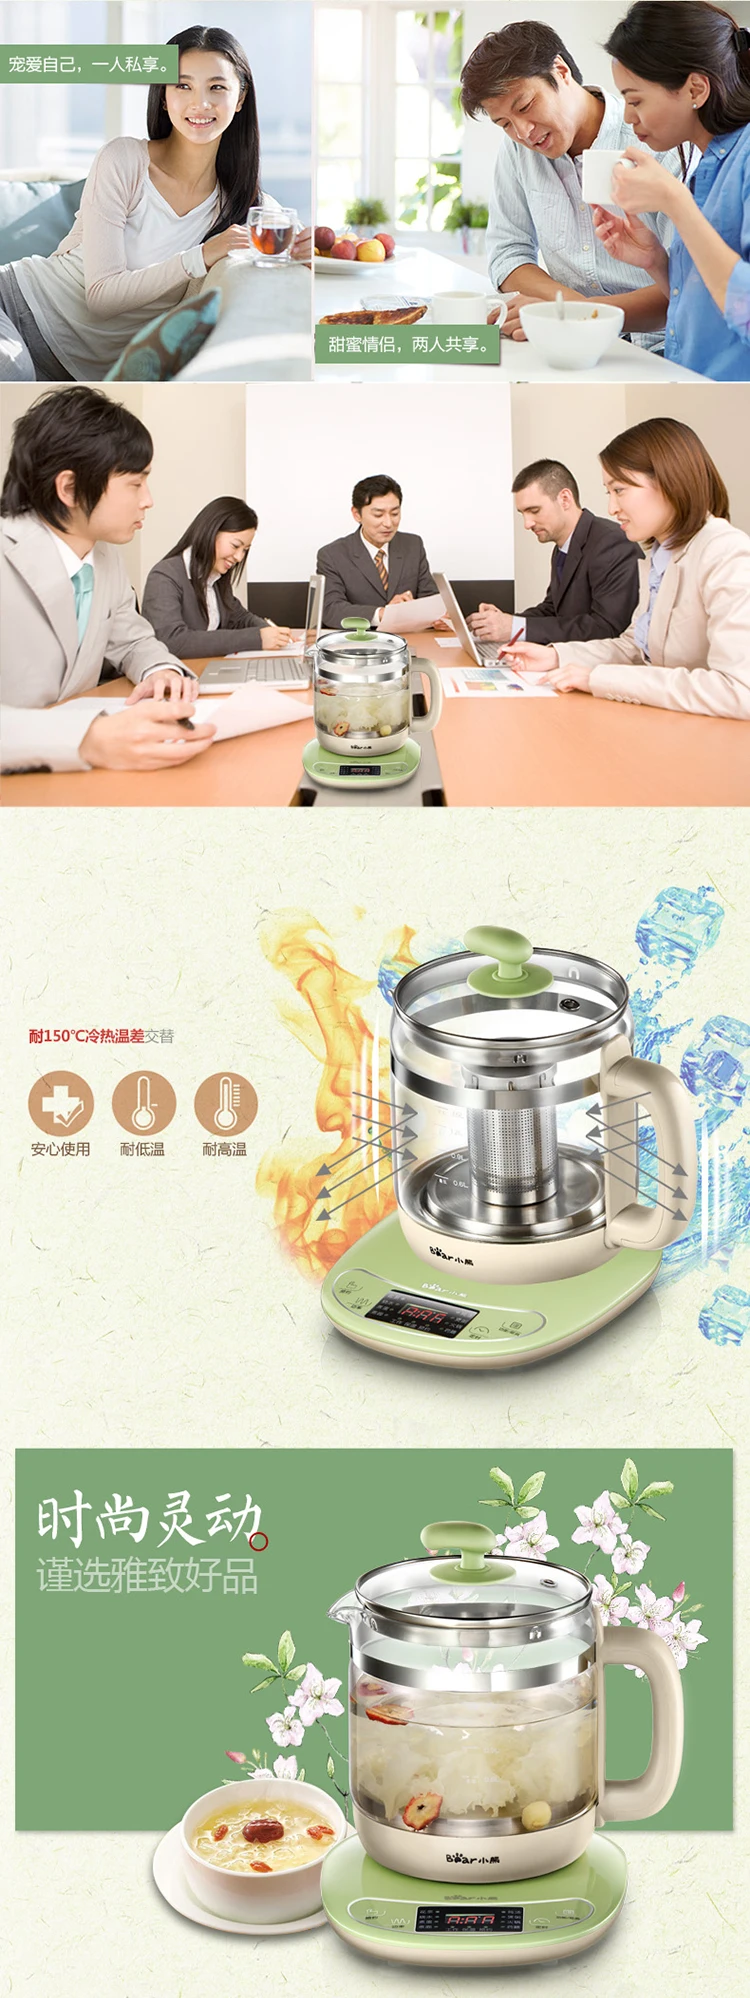 Chinaguangdong медведь YSH-B18T1 стекло здоровье кофейник 1.5L Бытовой Универсальный электрический чайник для воды чайник 220-230-240v